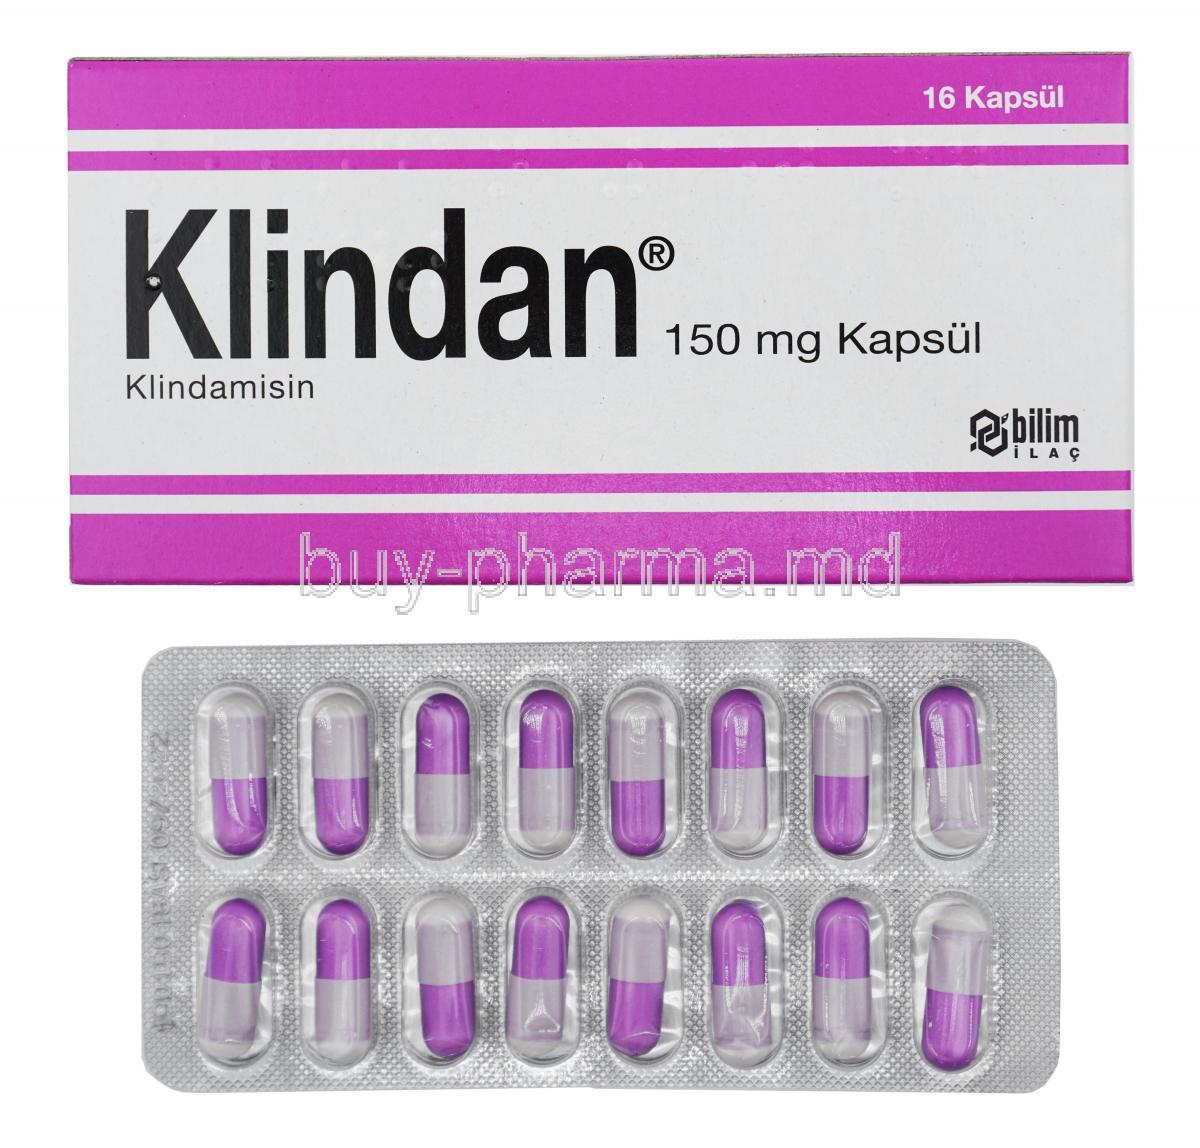 Klindan, Clindamycin 150mg box and capsule